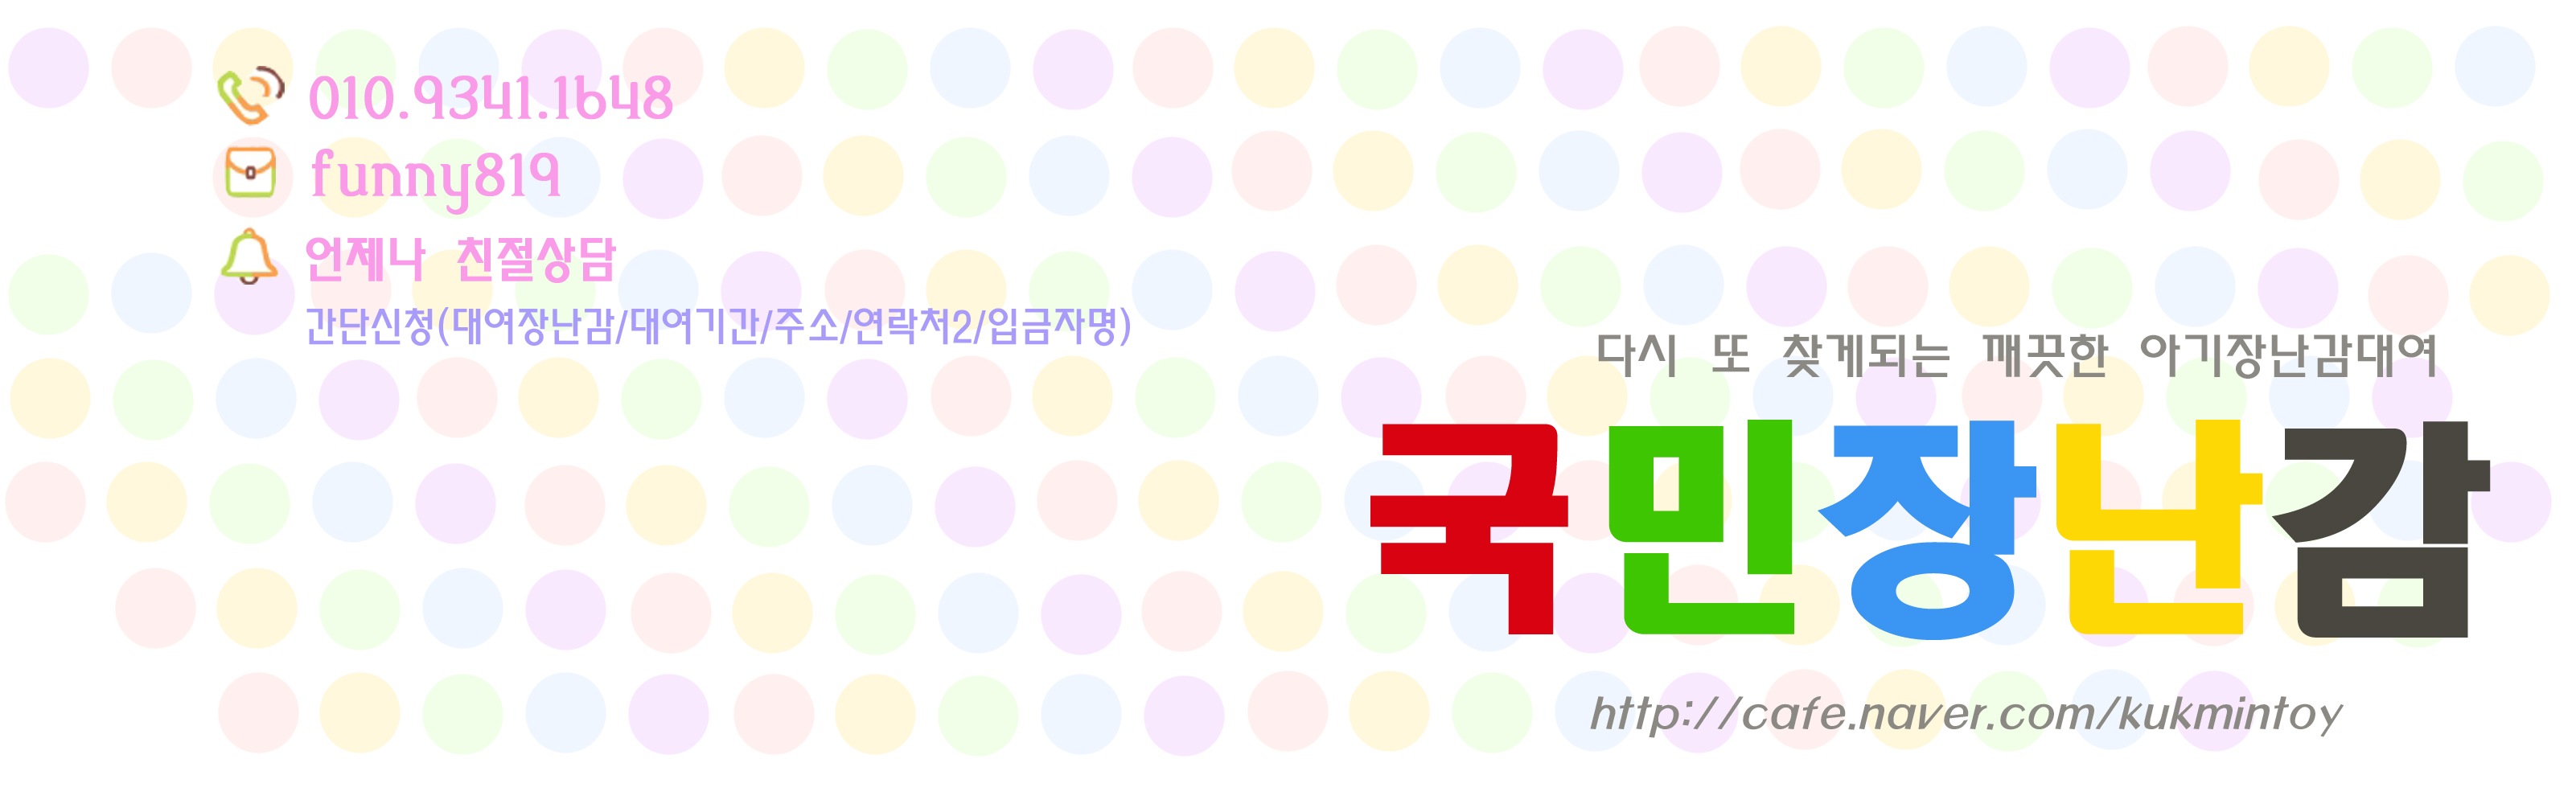 국민장난감(수입장난감대여) ♥모빌,신형쏘서,점퍼루,러닝홈등♥